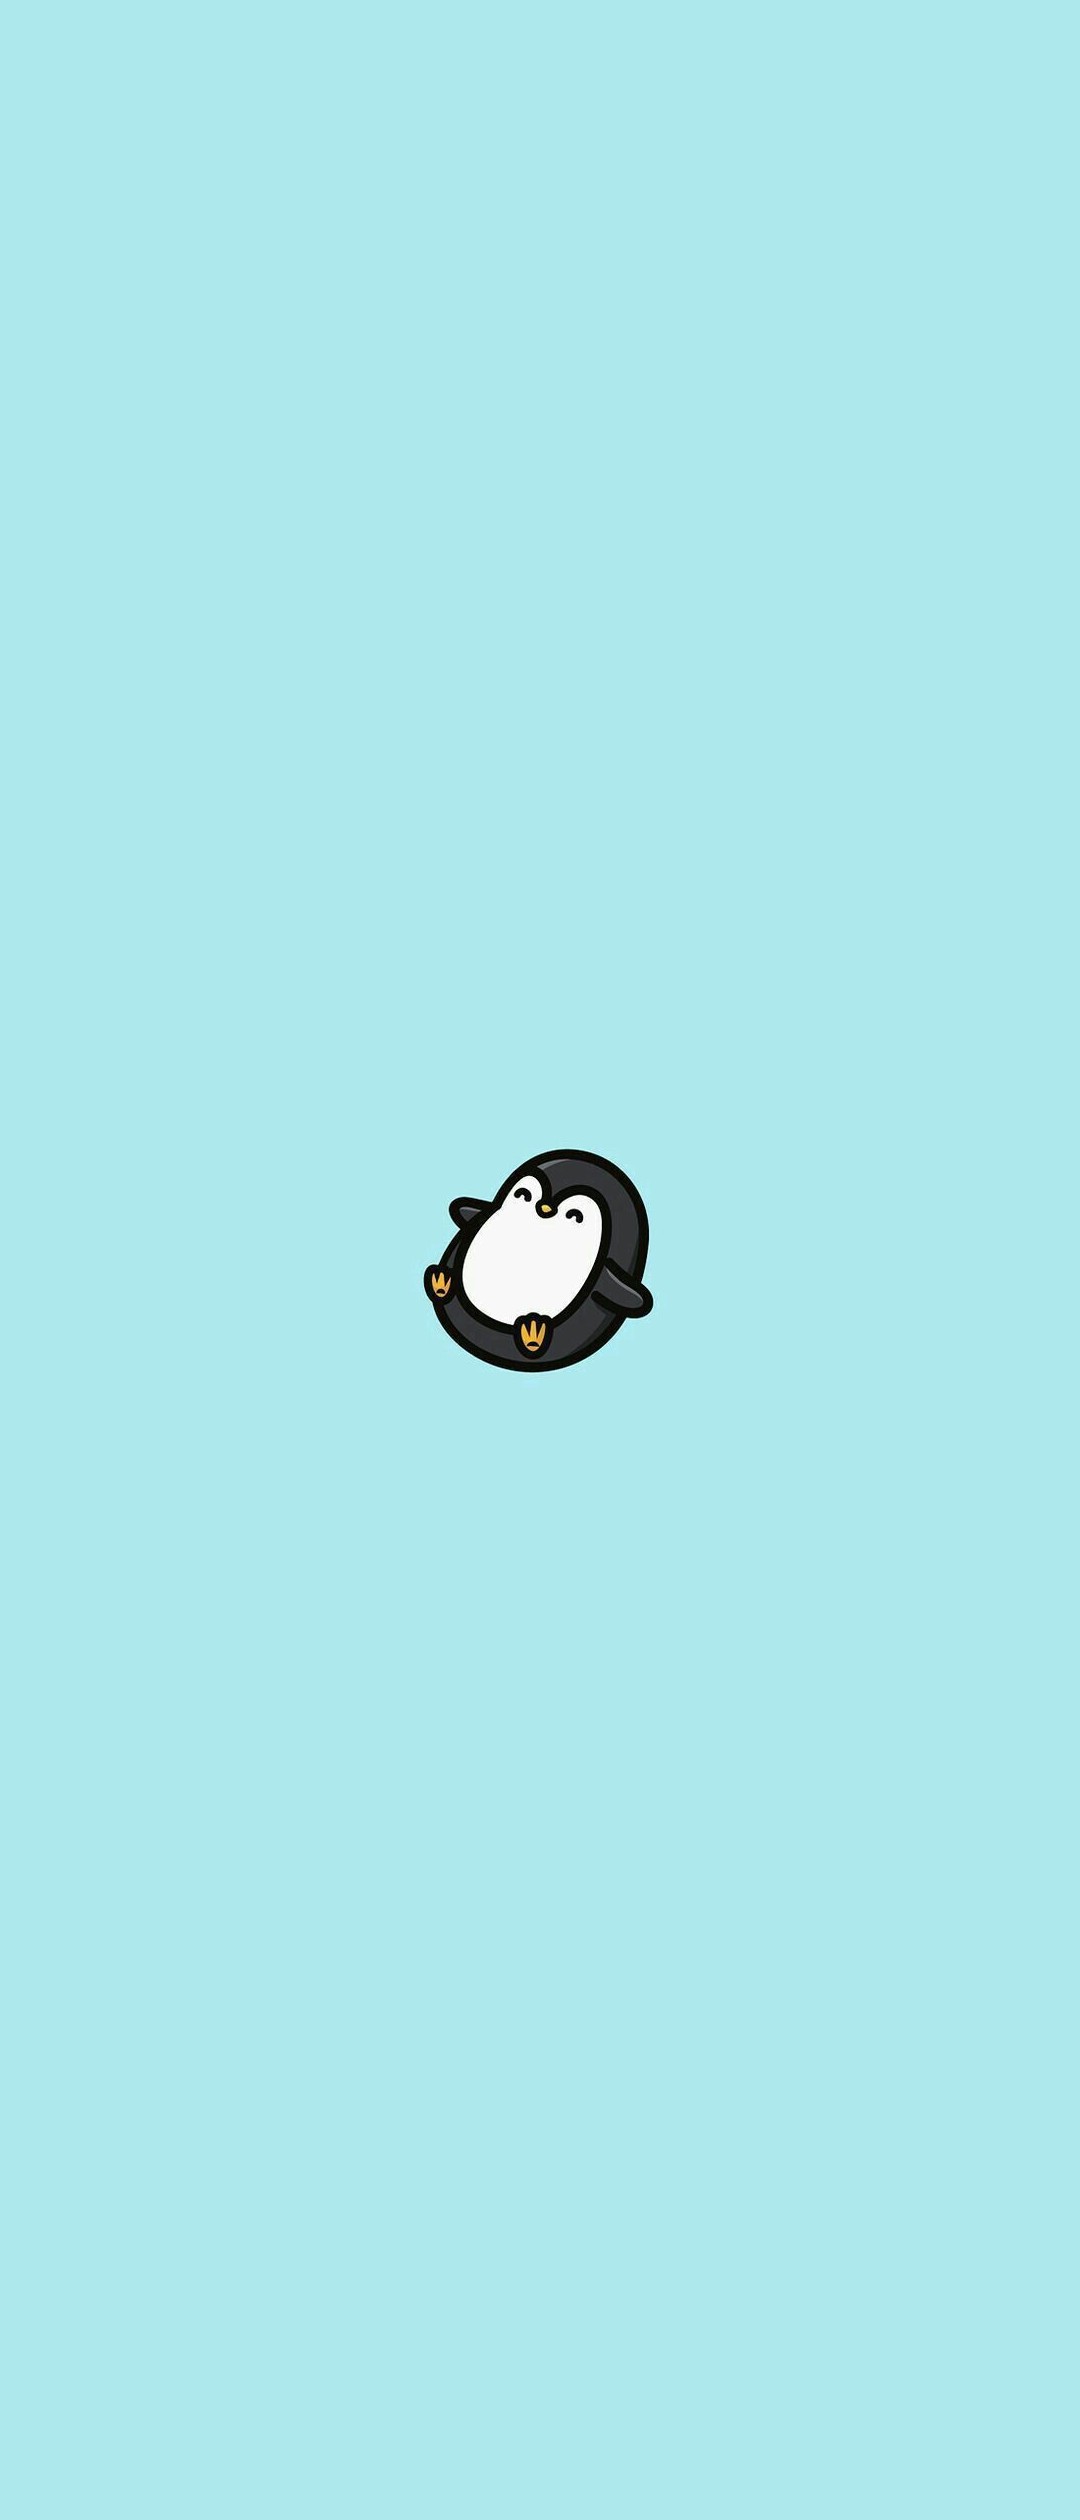 選択した画像 かわいい 簡単 ペンギン イラスト 7770 簡単 可愛い イラスト ペンギン